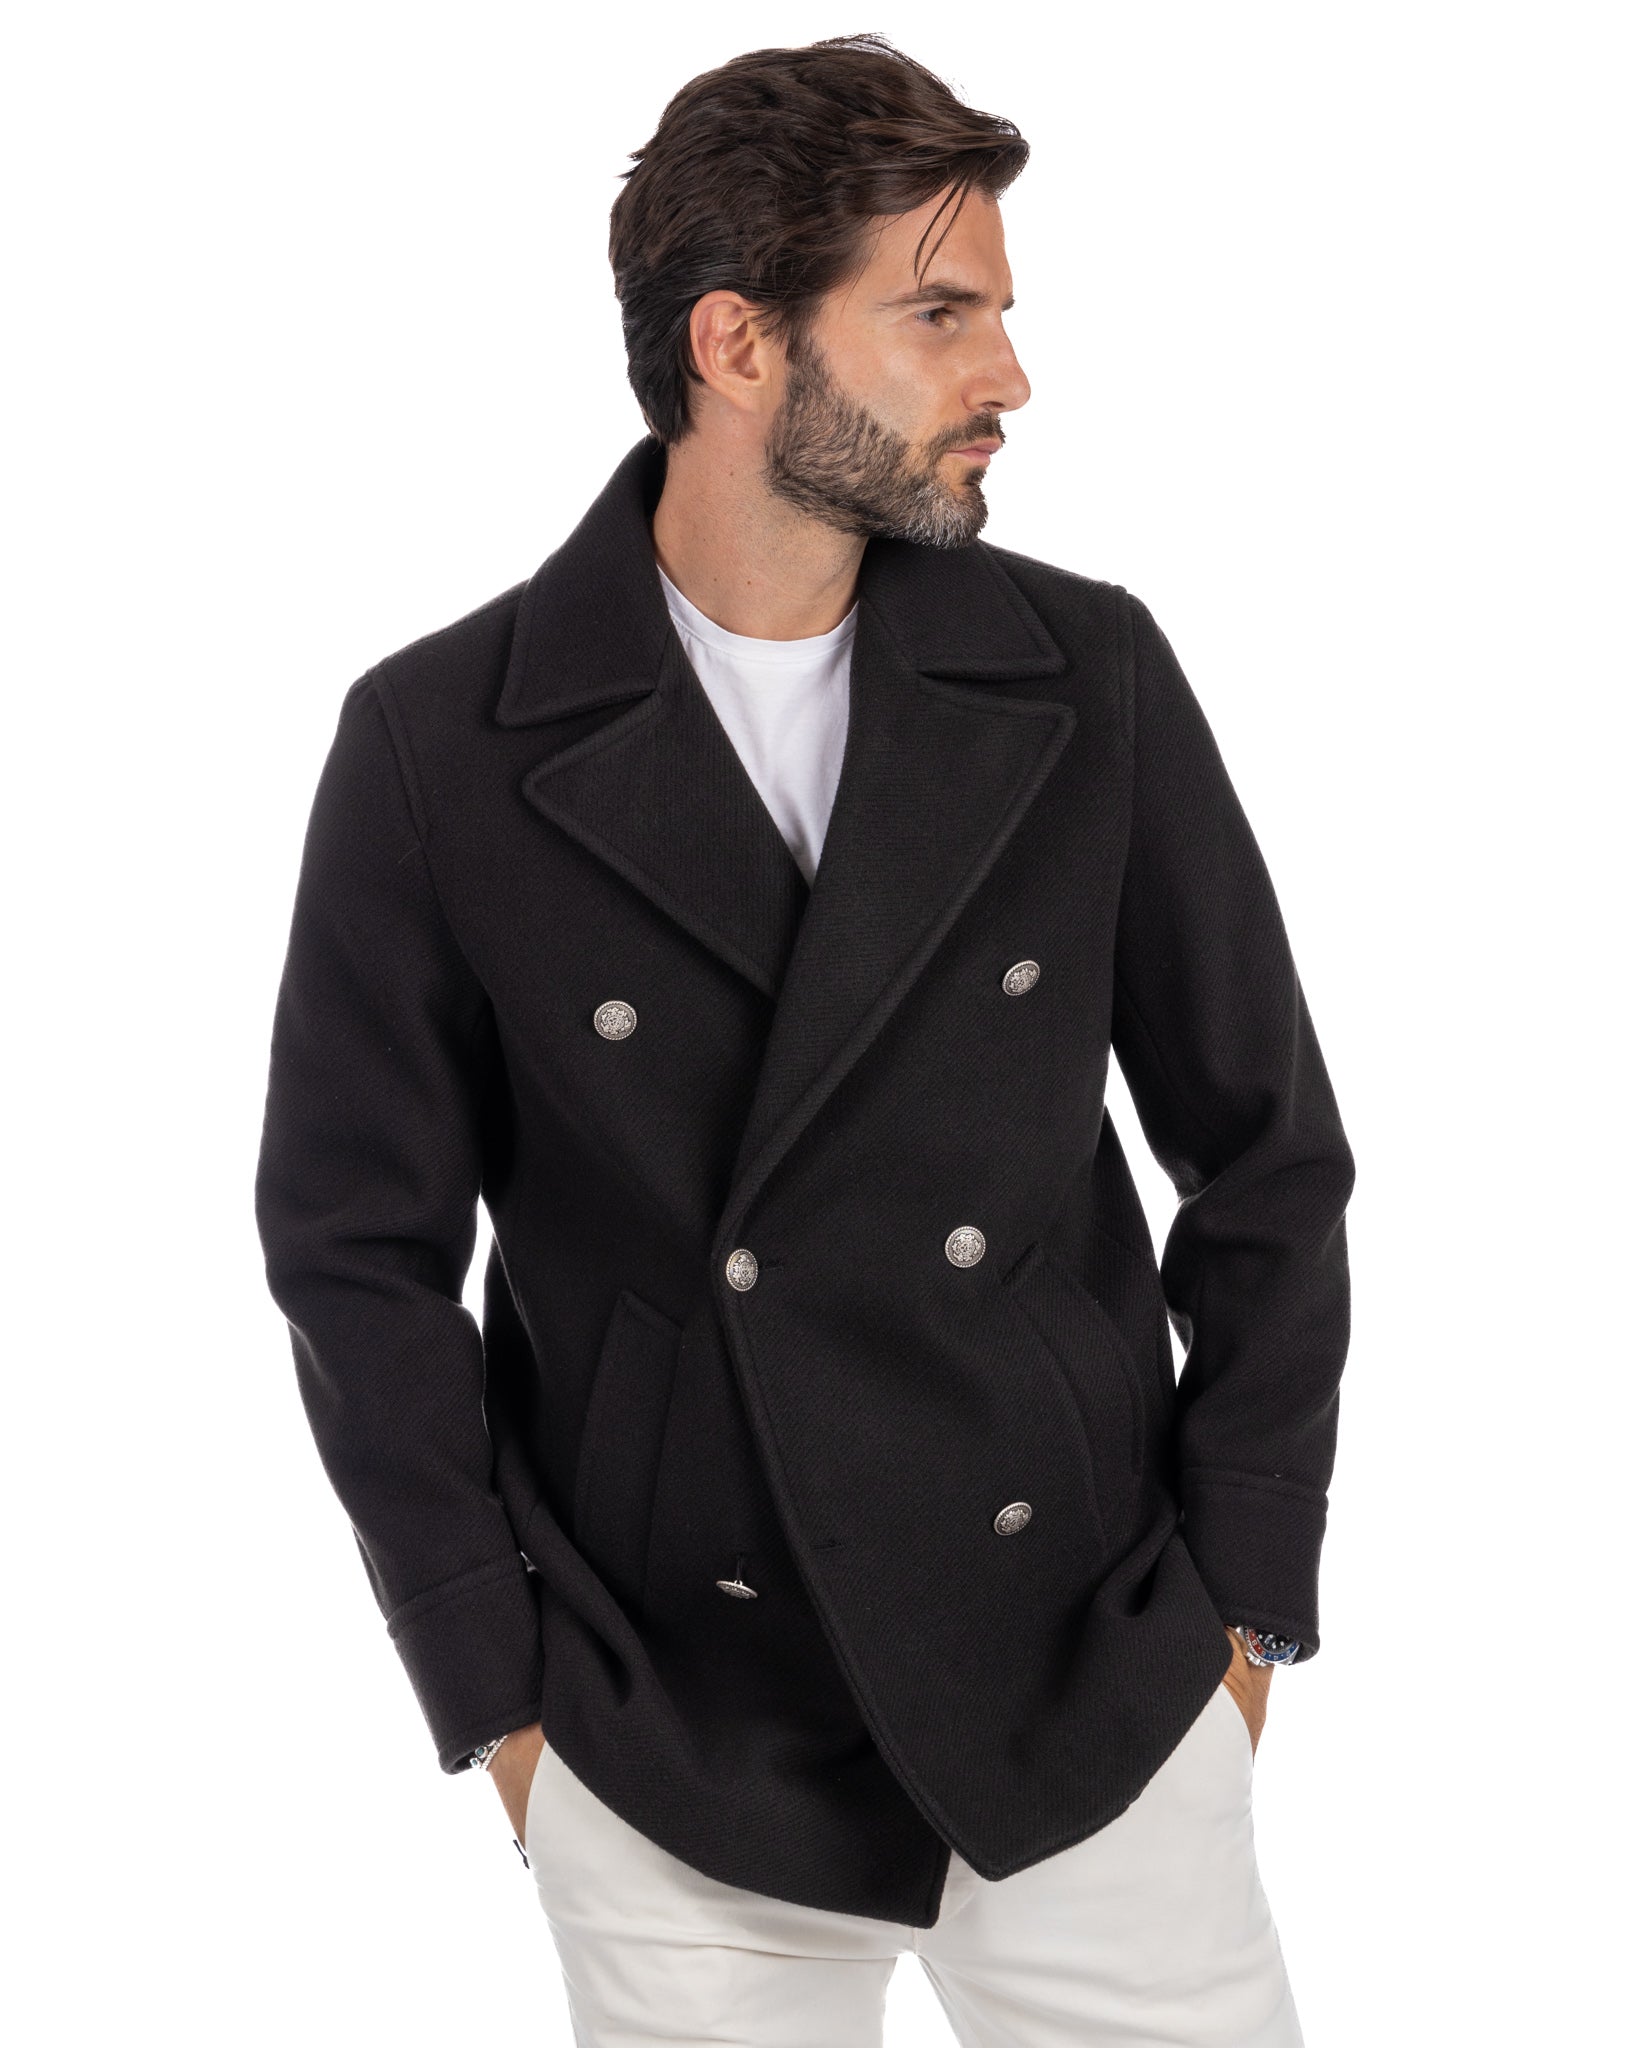 David - black 3/4 wool coat